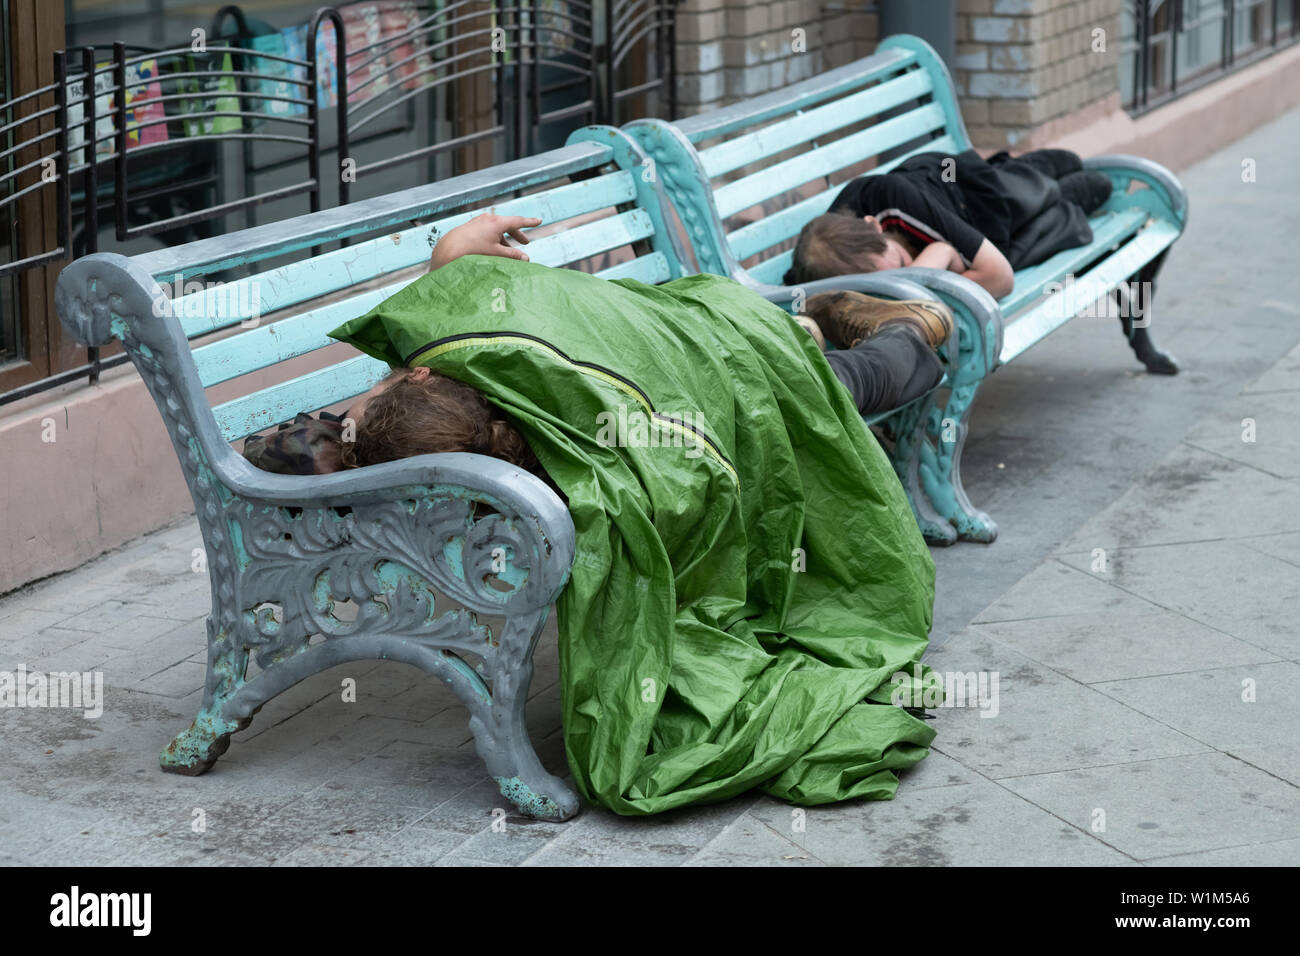 Descripción: persona sin hogar está durmiendo en un banco en un frío día de otoño en un parque en el país más pobre de la Unión Europea Bulgaria. Foto de stock